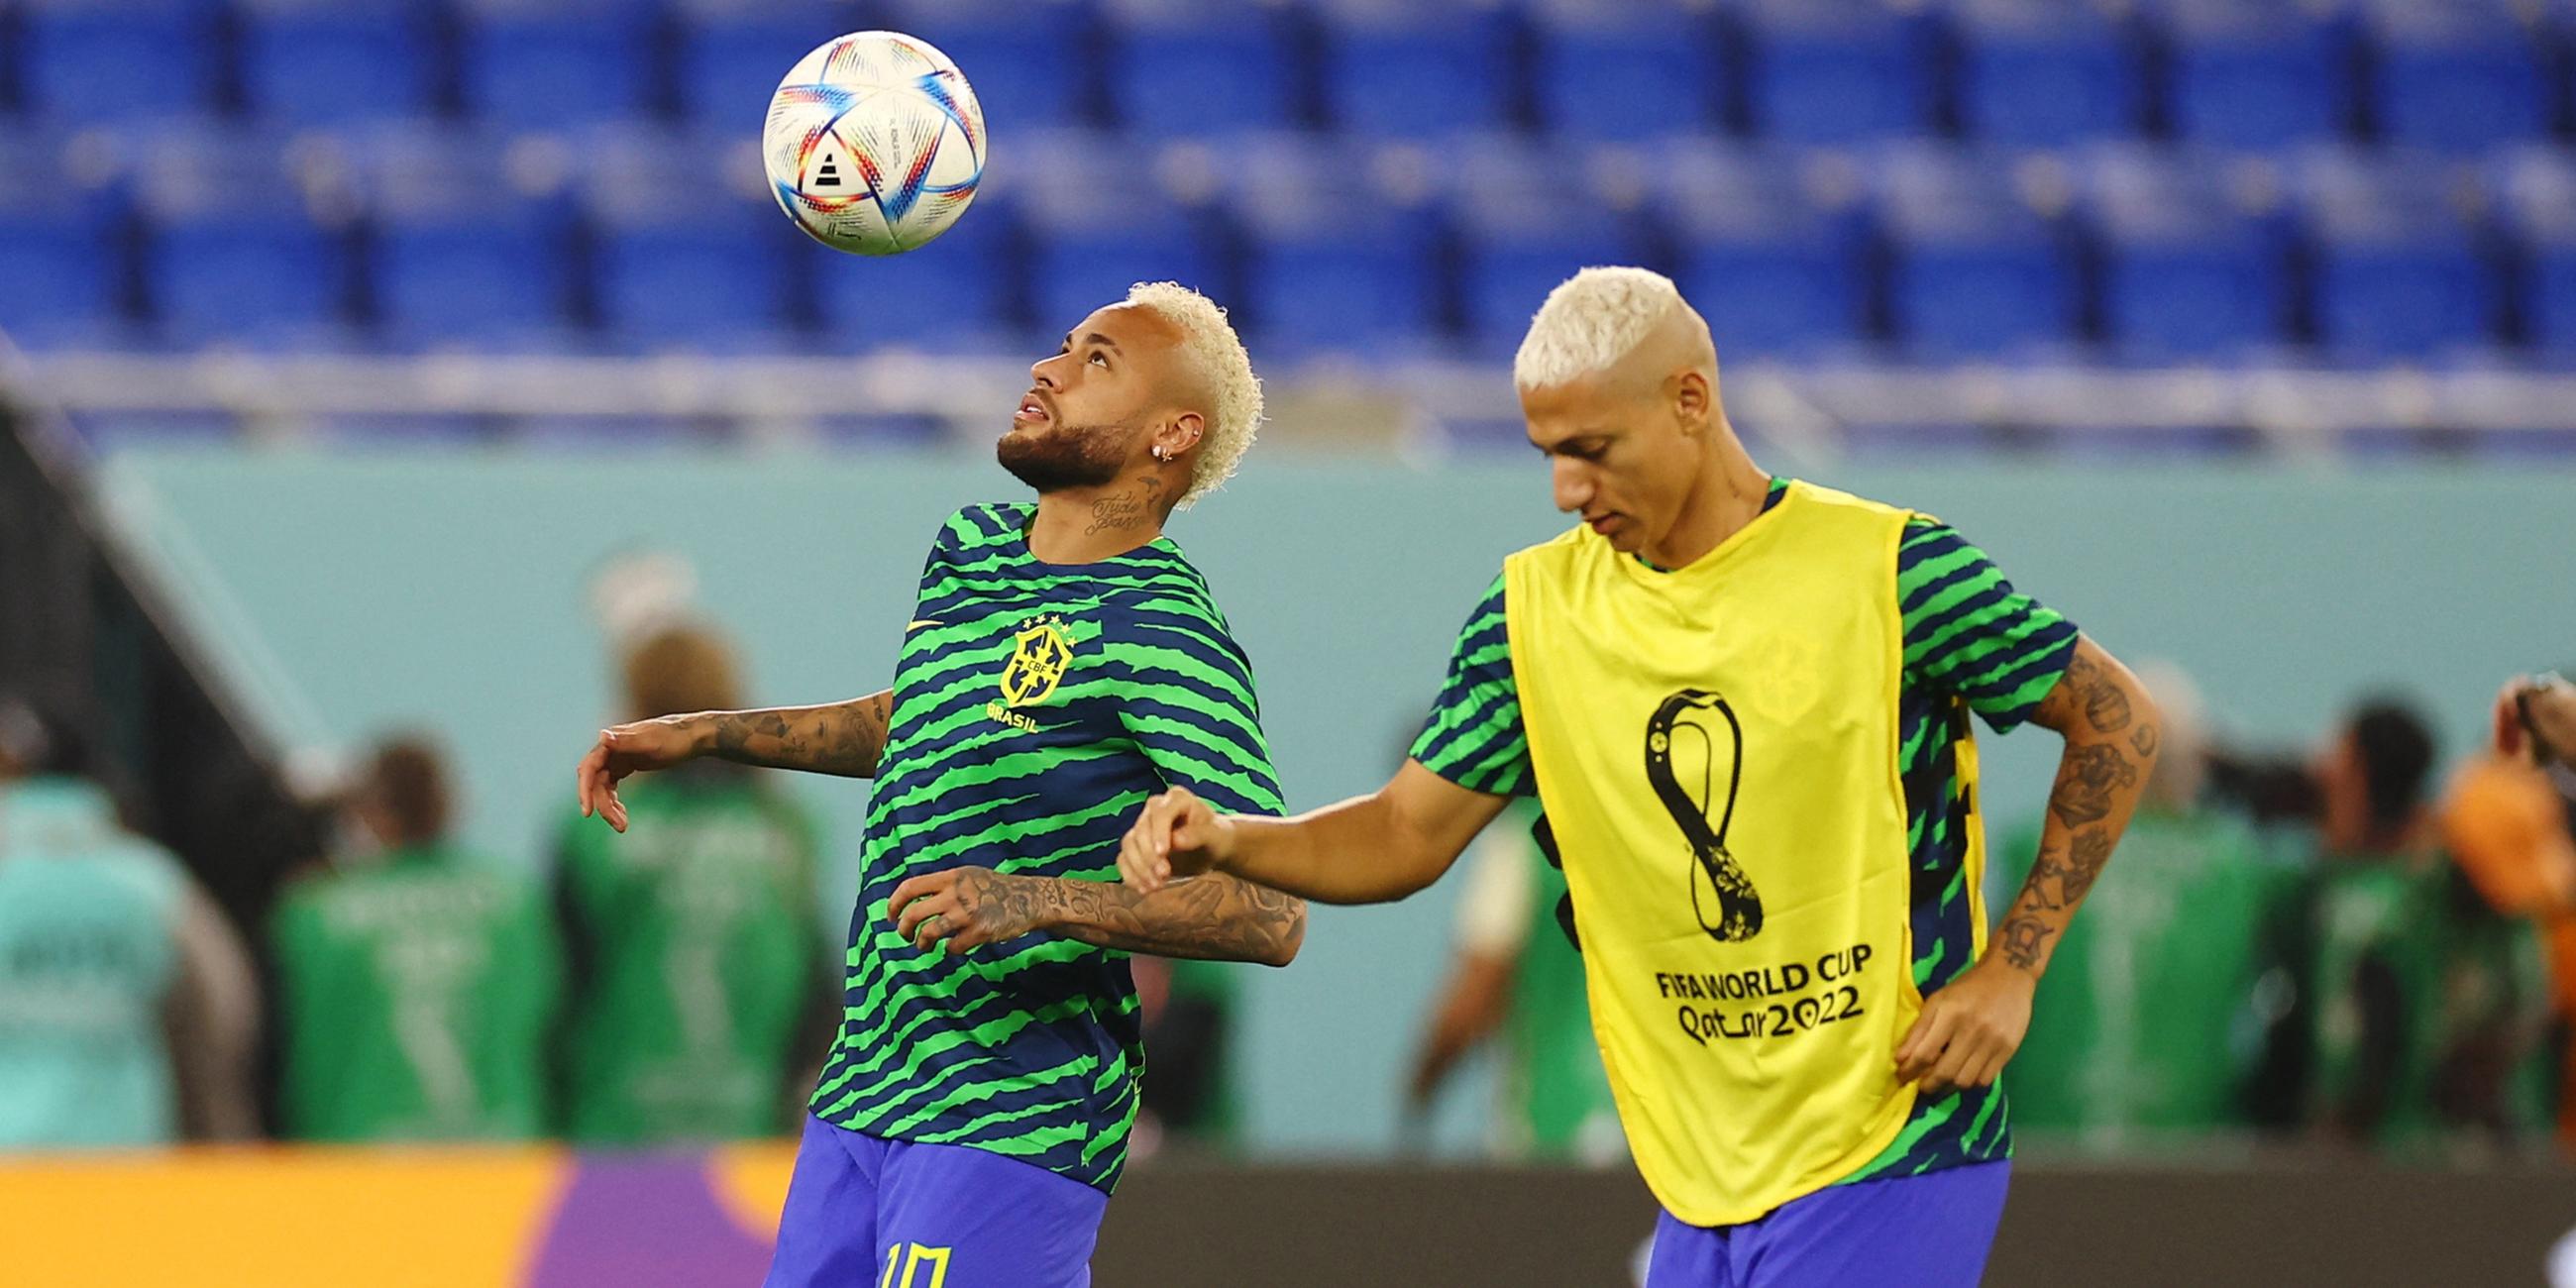 05.06.2022, Doha, Katar: Die brasilianischen Spieler Neymar und Richarlison (v.l.n.r.) beim Aufwärmen vor dem Spiel gegen Südkorea 